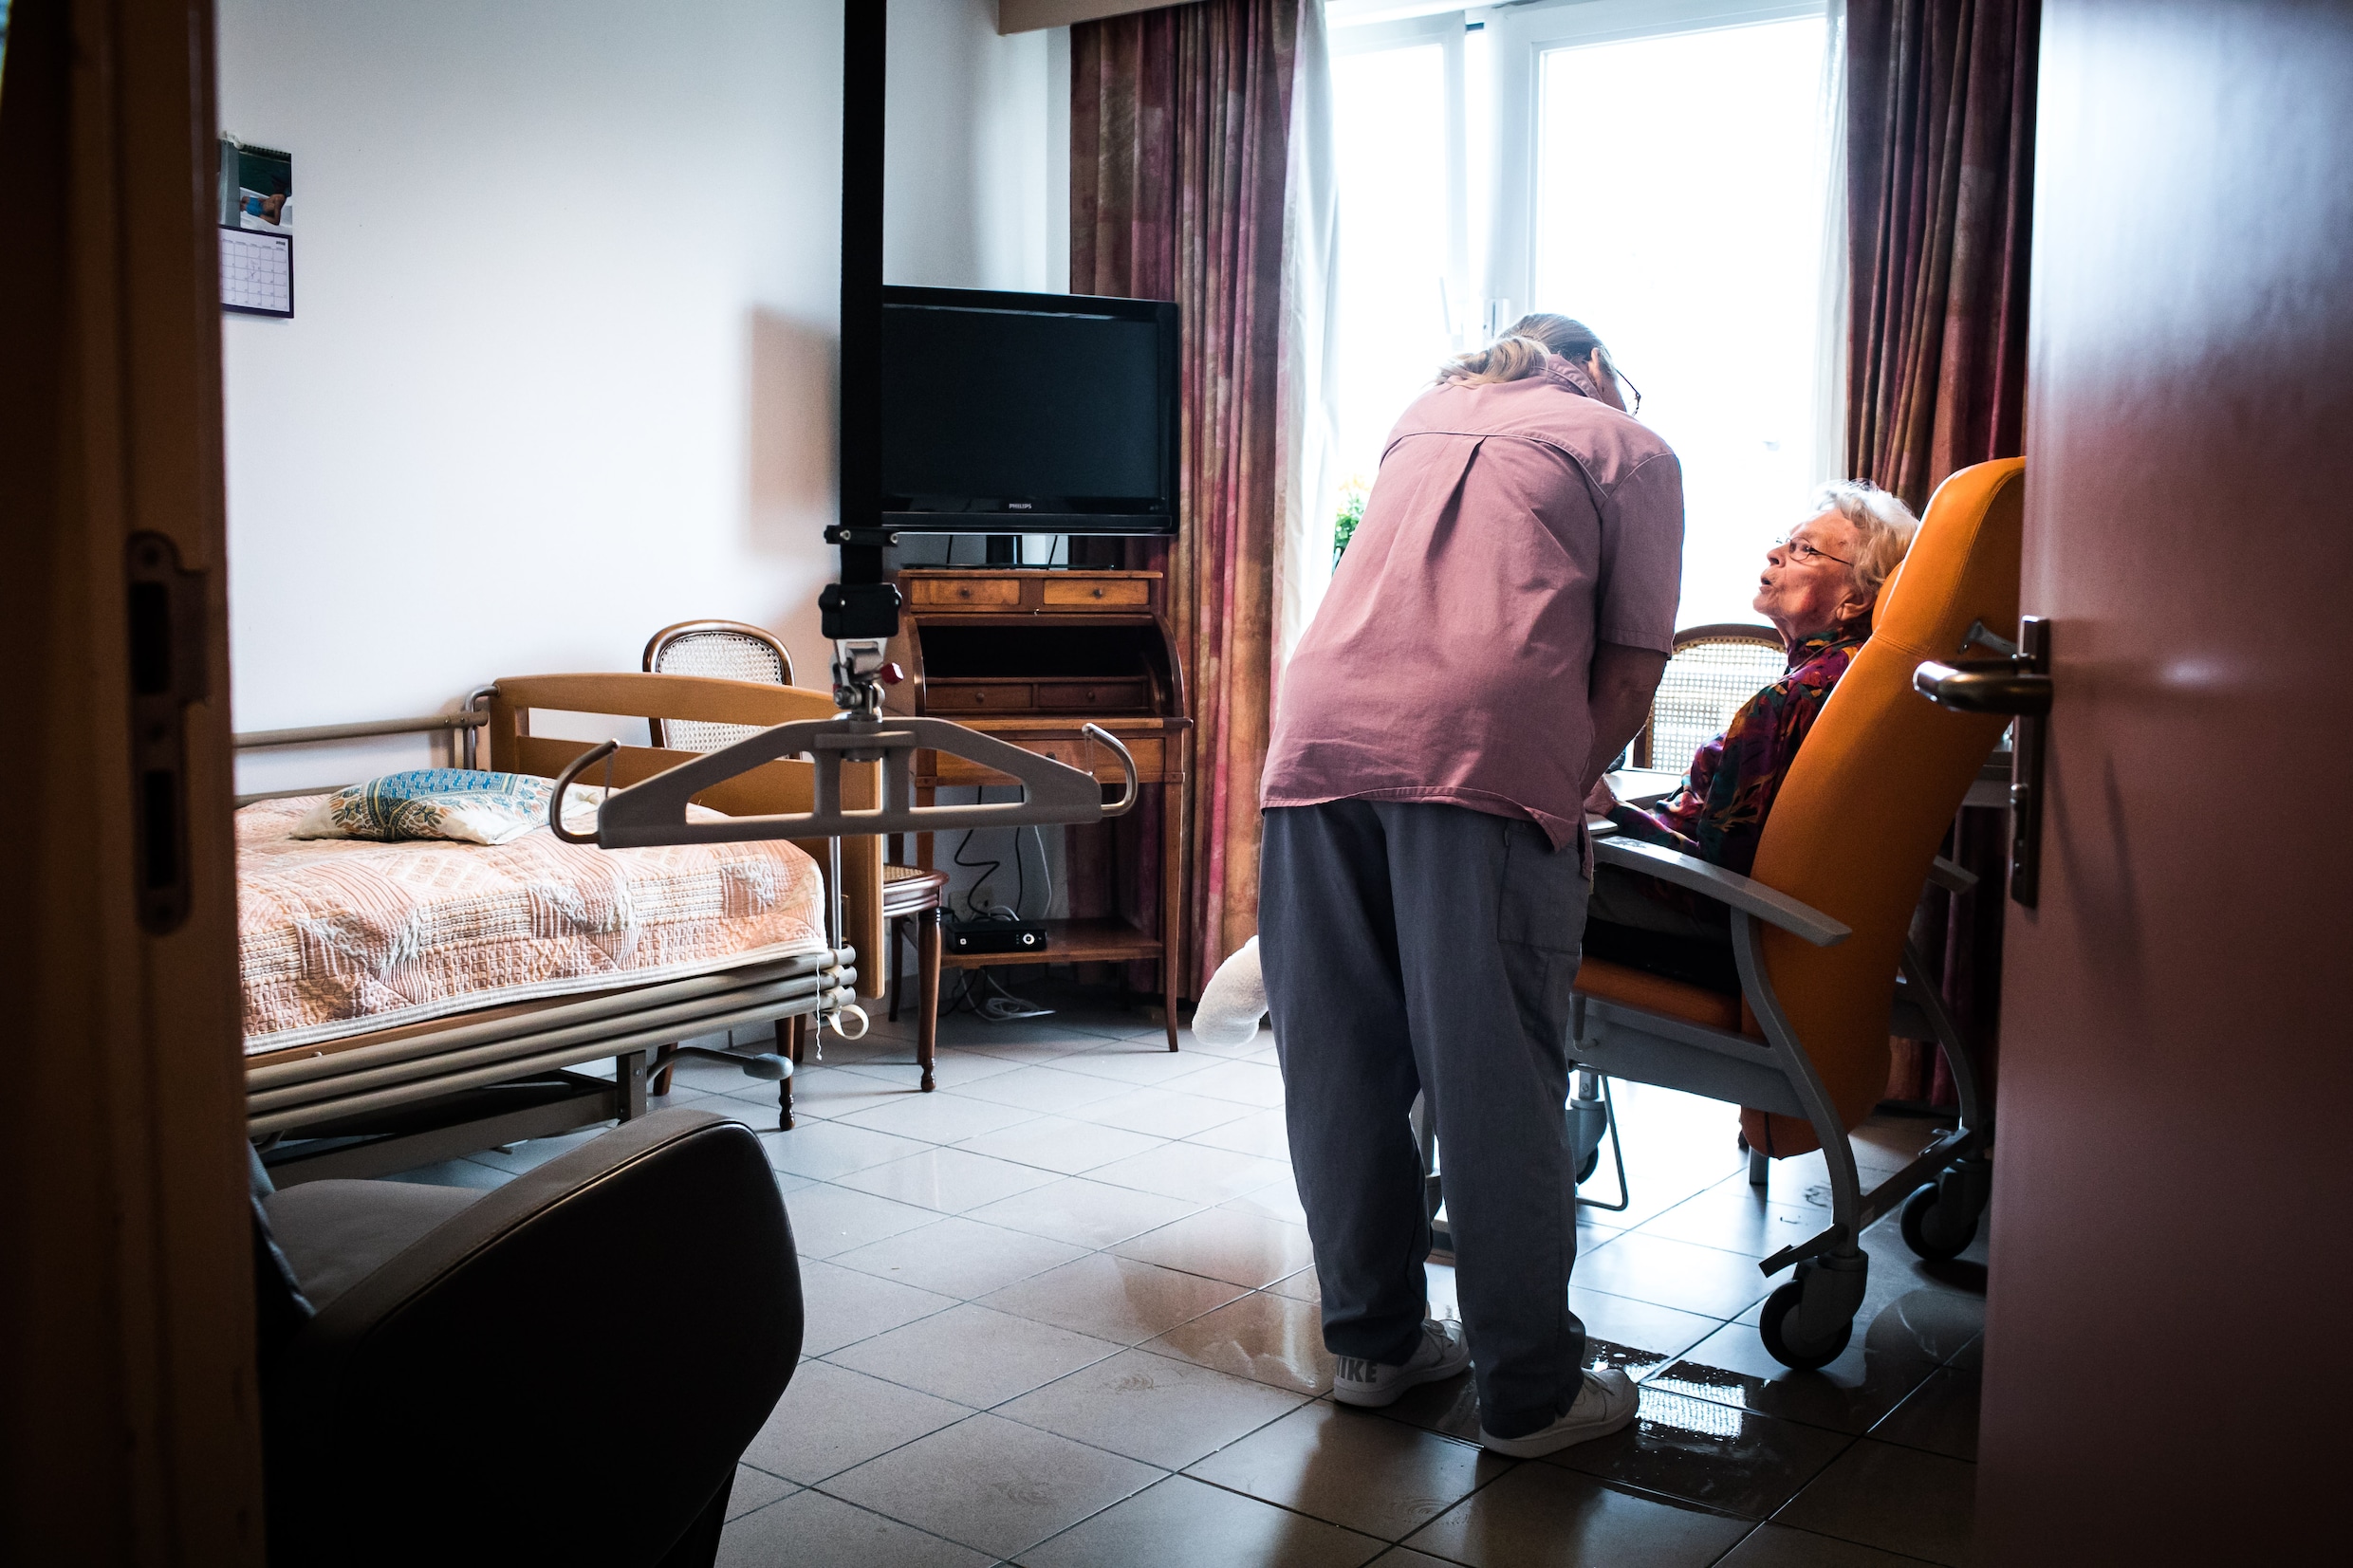 Rusthuis (alweer) duurder geworden: kamer kost gemiddeld 59 euro per dag